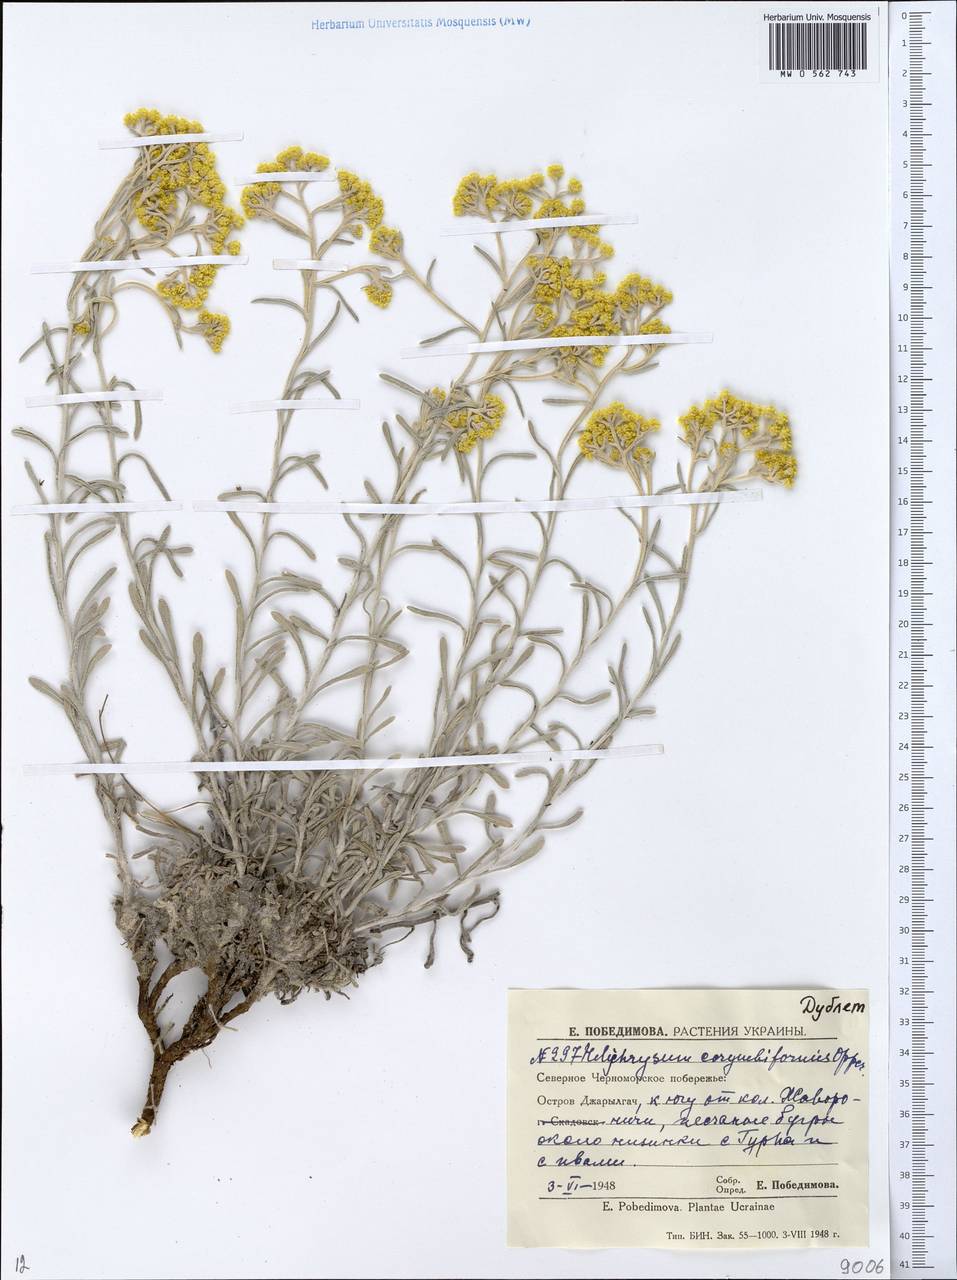 Helichrysum arenarium subsp. ponticum (Velen.) Clapham, Eastern Europe, South Ukrainian region (E12) (Ukraine)